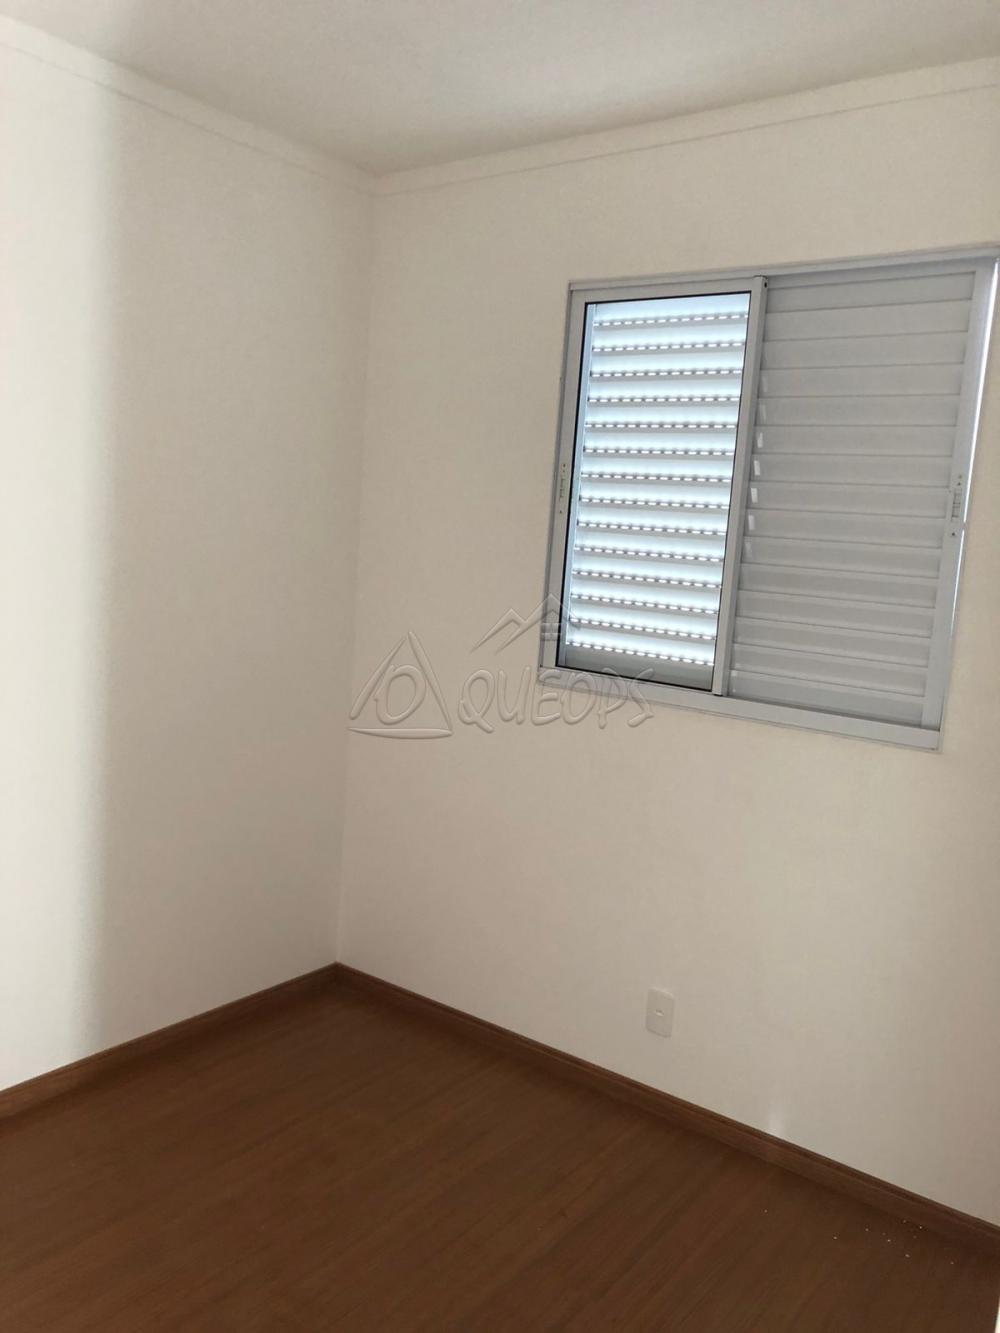 Comprar Apartamento / Padrão em Barretos R$ 220.000,00 - Foto 9